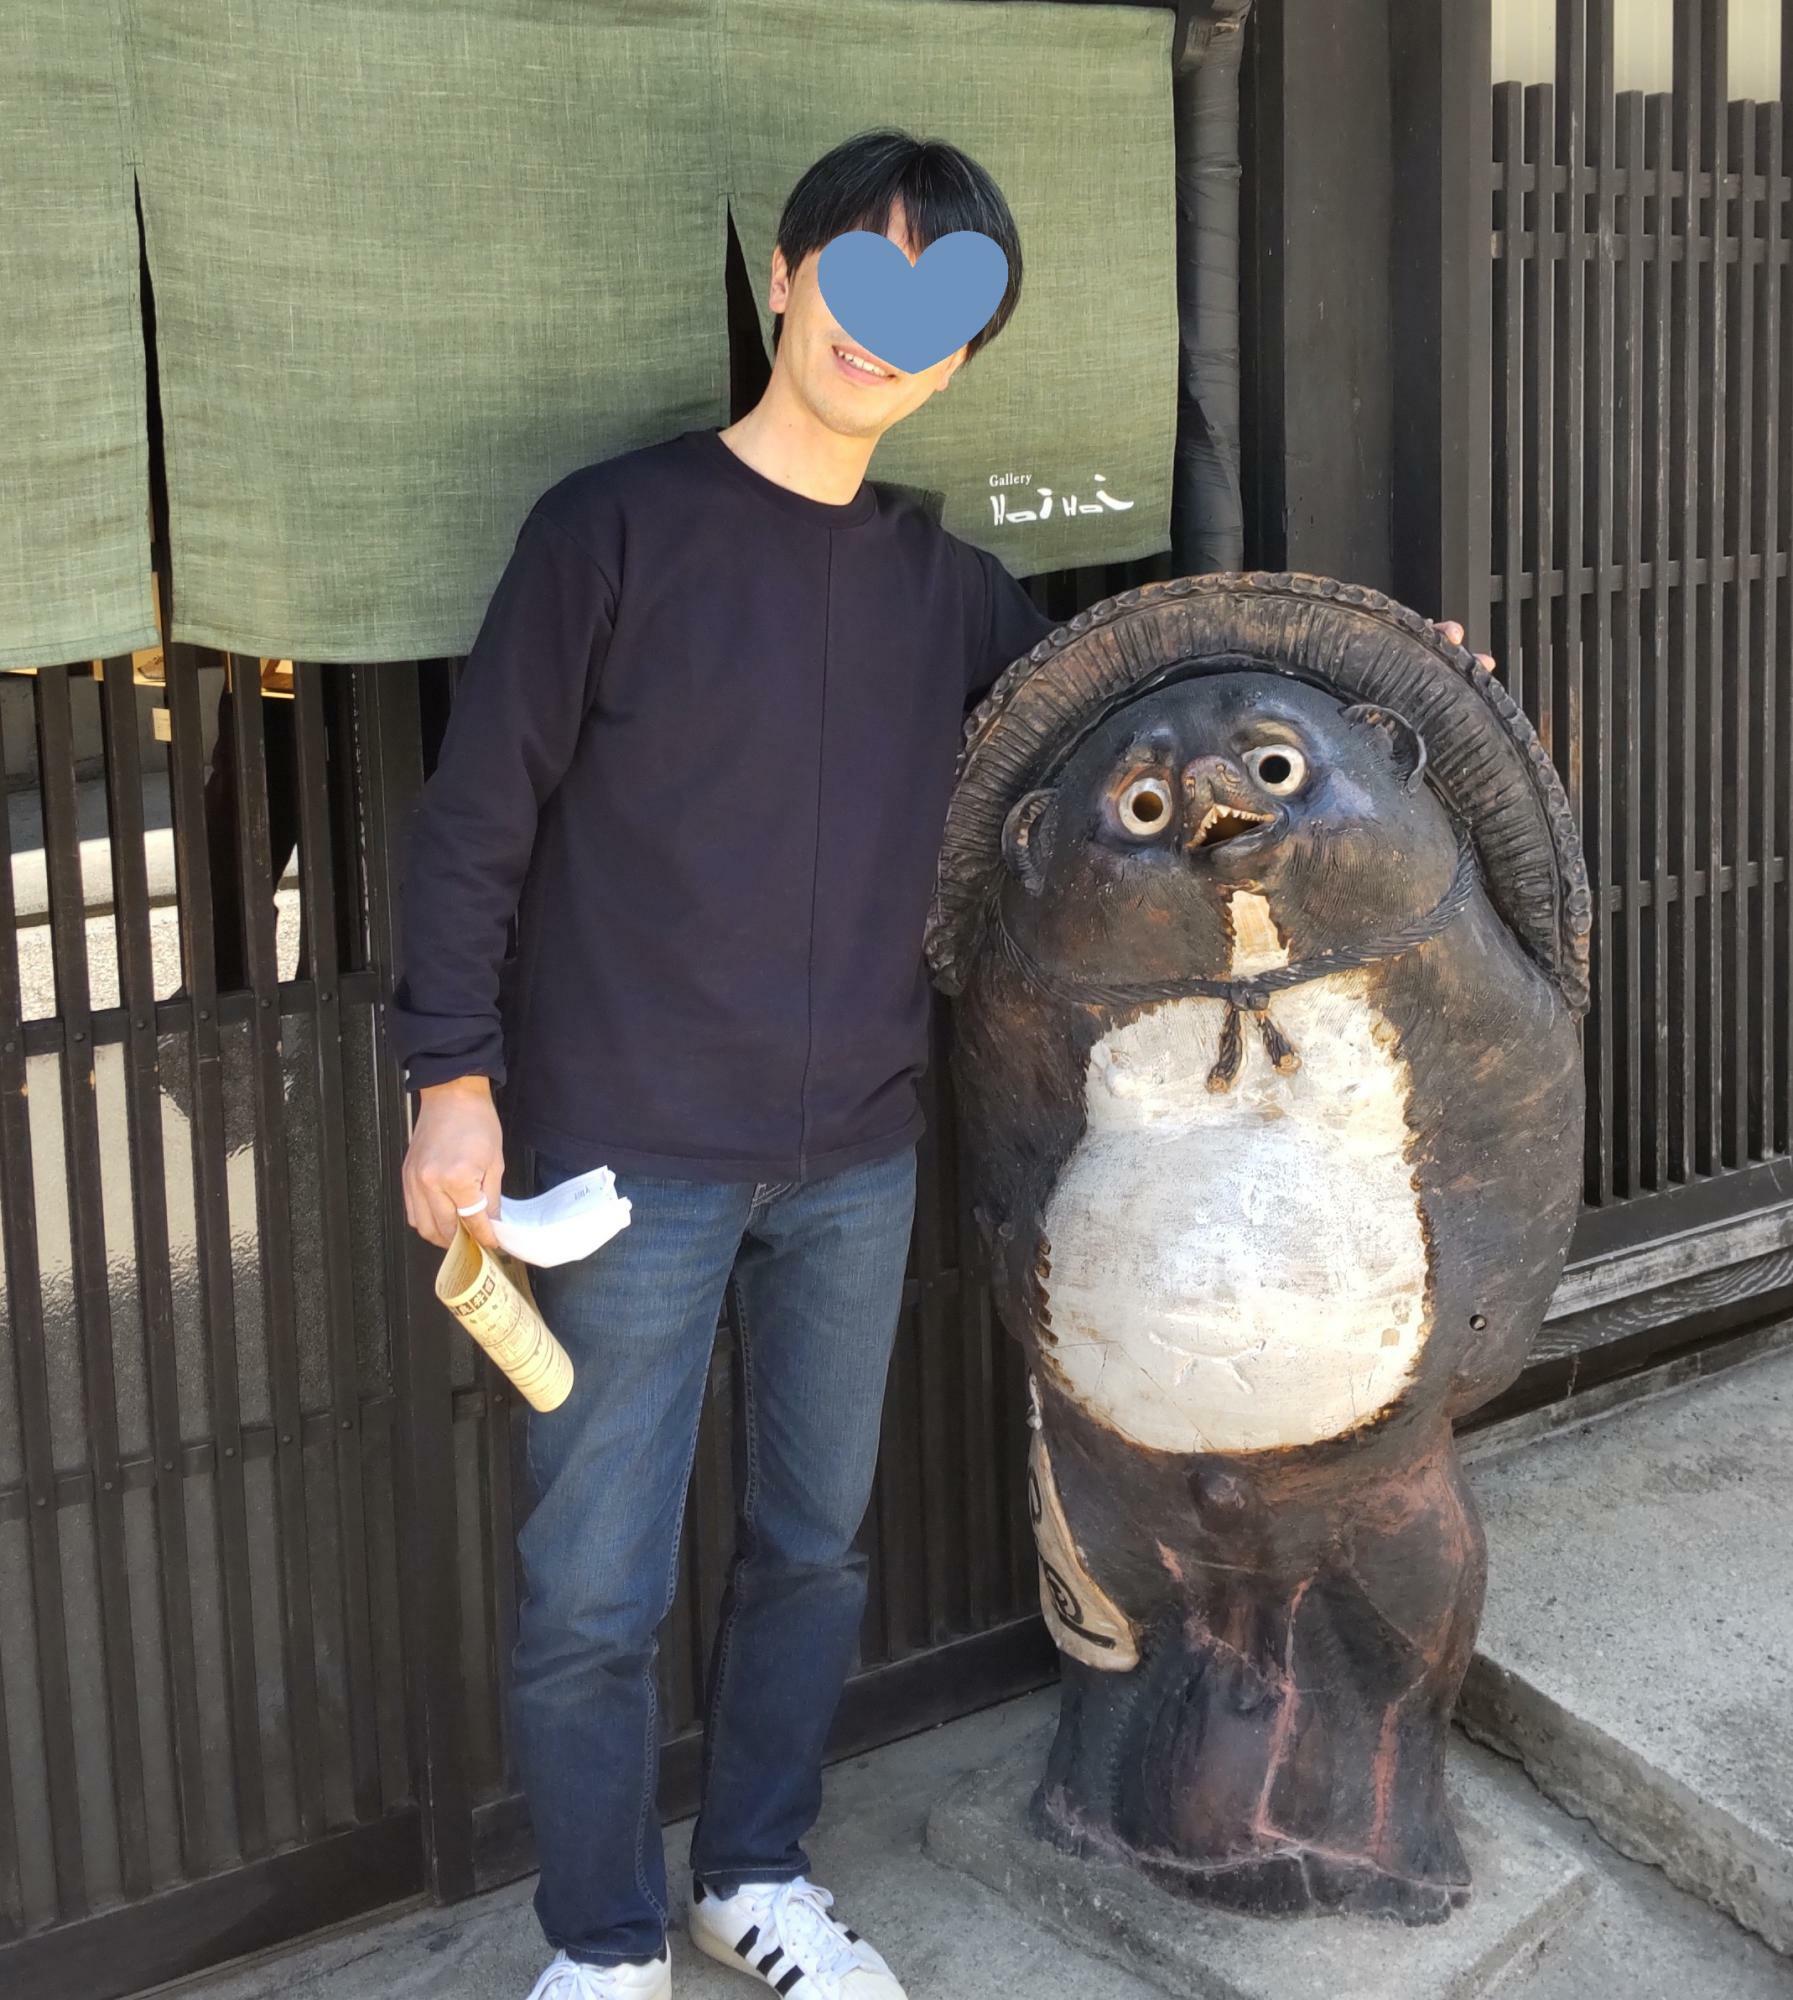 中山道の茶店でタヌキとツーショット。175センチ63キロの高田さん。憎めない感じの男性です。（本人提供）